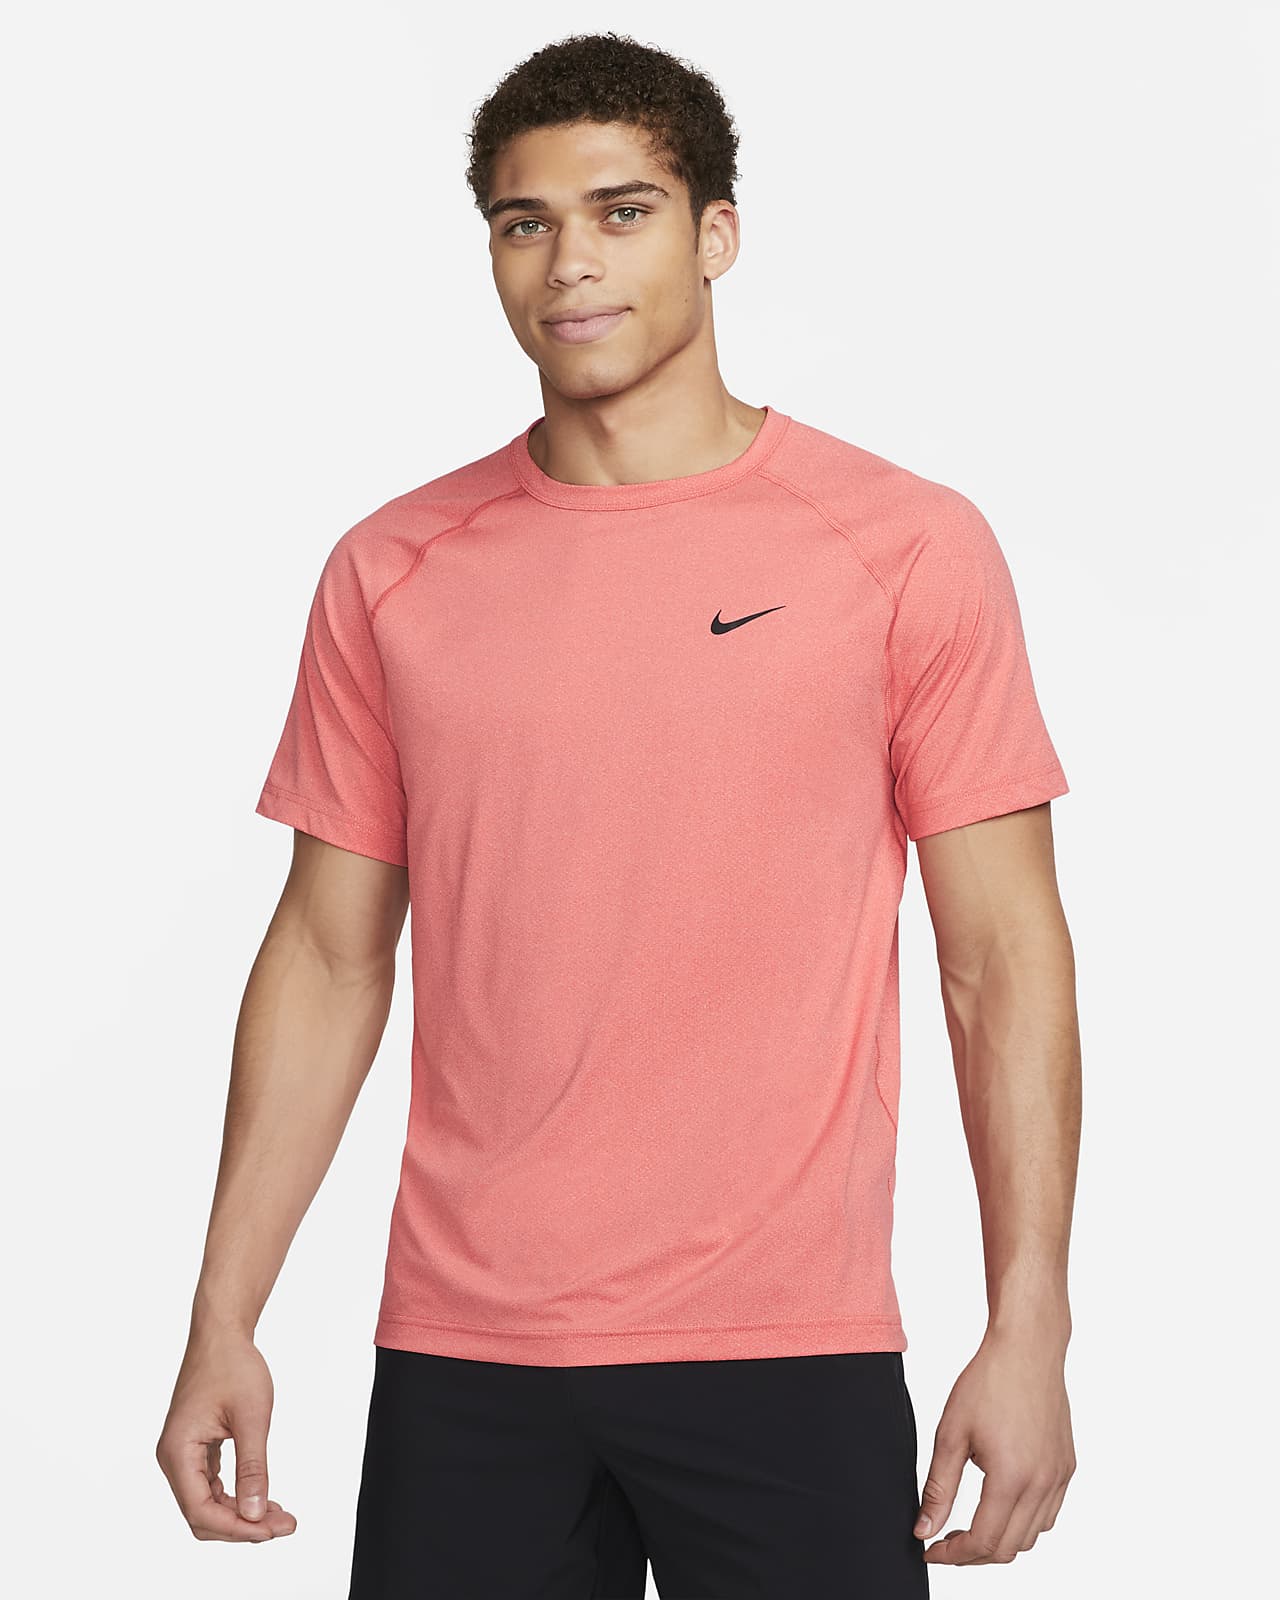 Nike Dri-FIT Men's Fitness T-Shirt. Nike SI